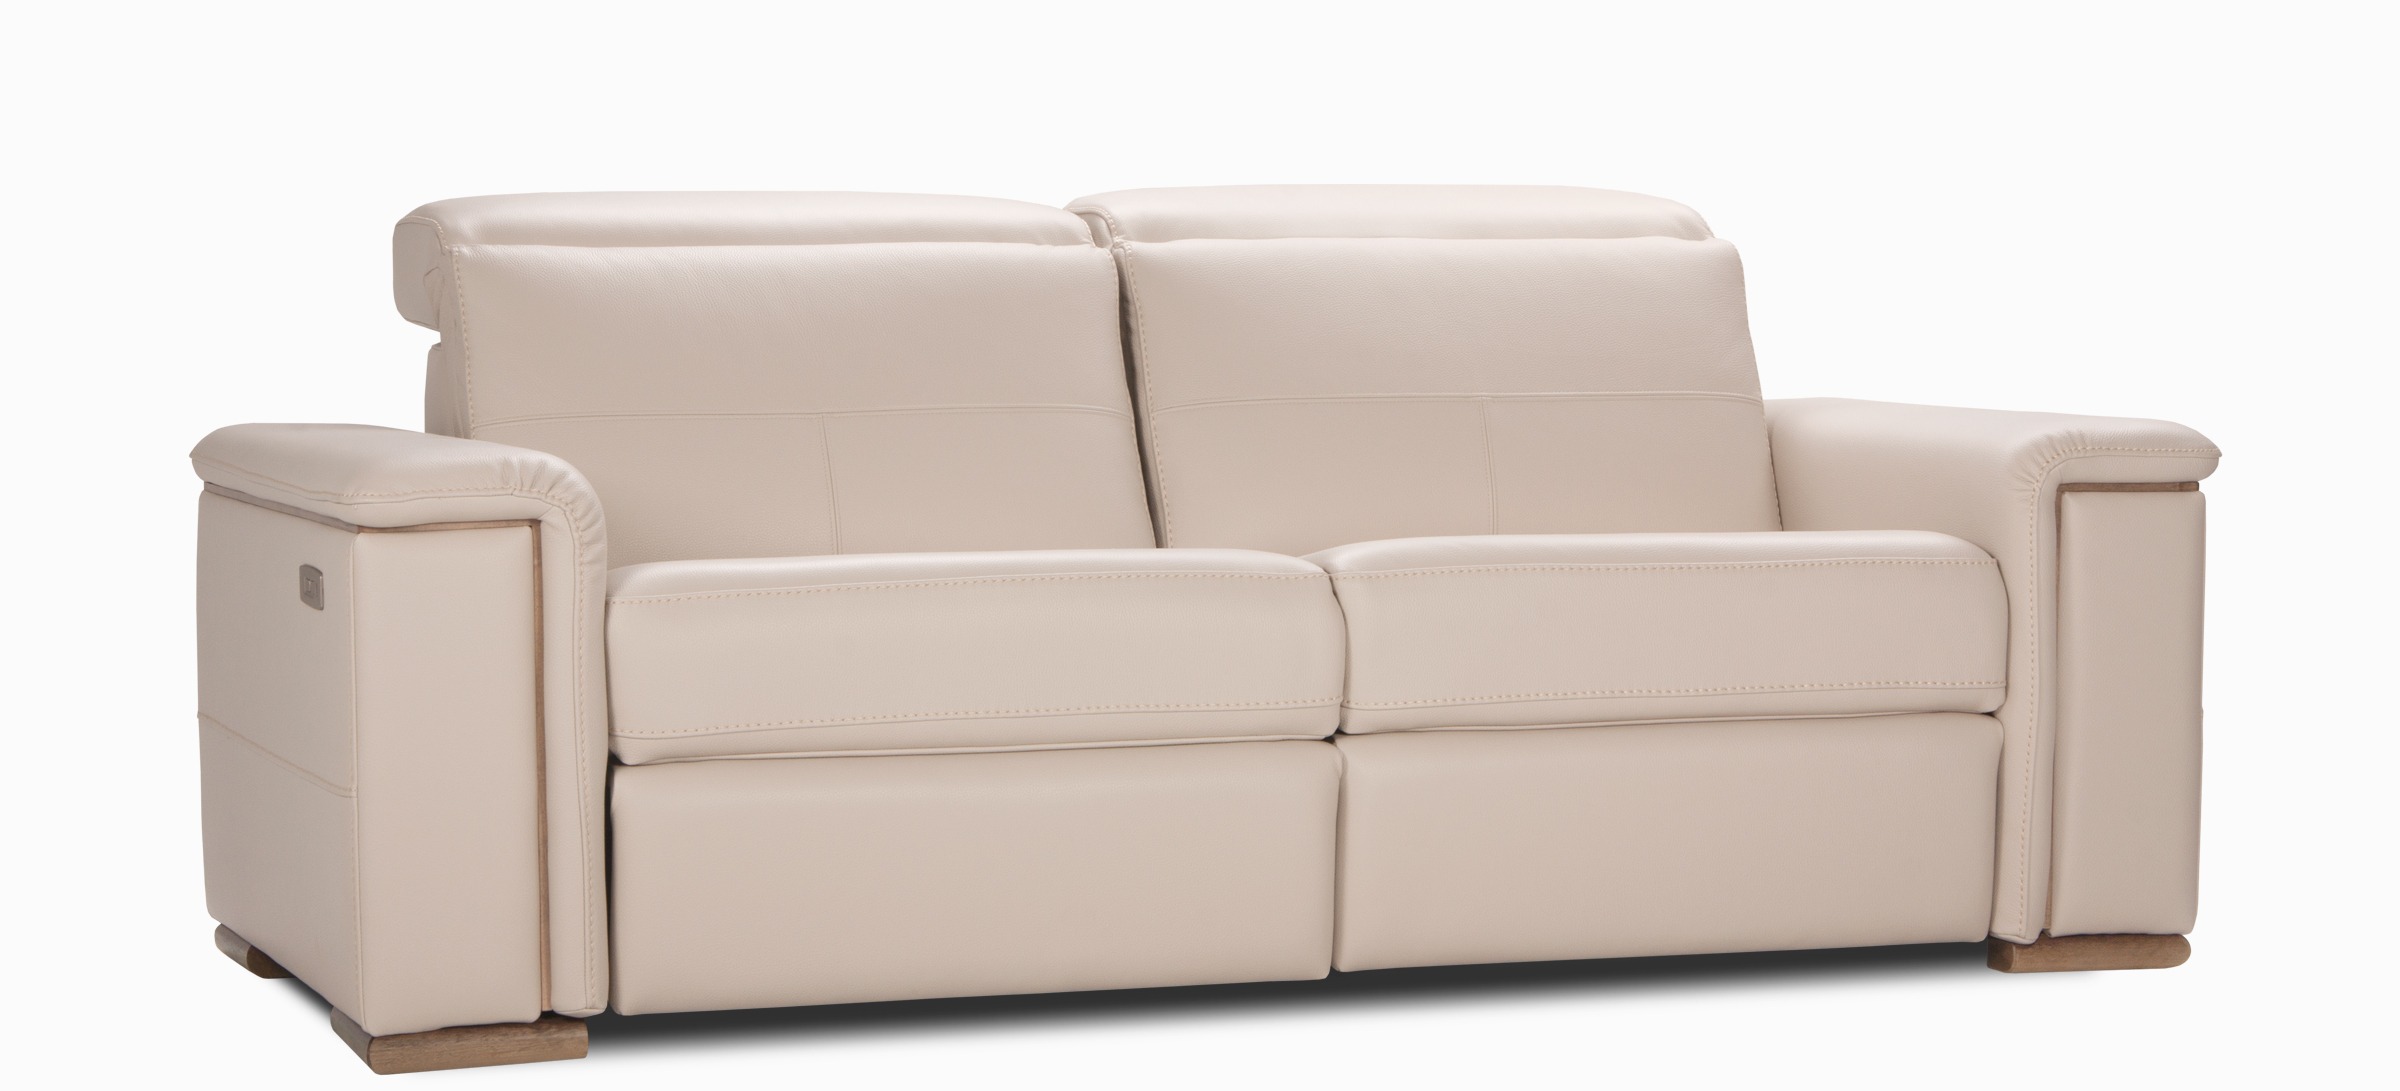 Melbourne sofa apt illusion gregre side